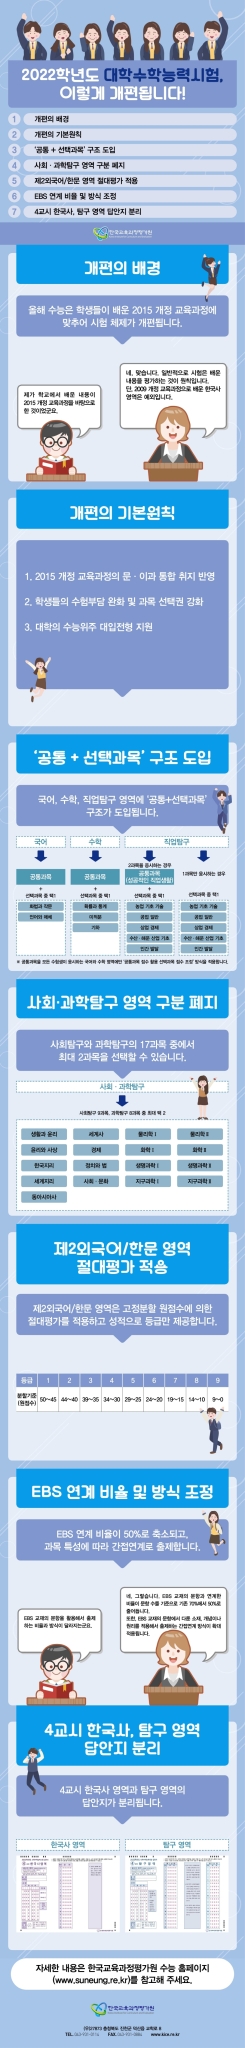 전라북도교육청 학교교육과_카드뉴스(2022수능체제개편 주요내용)